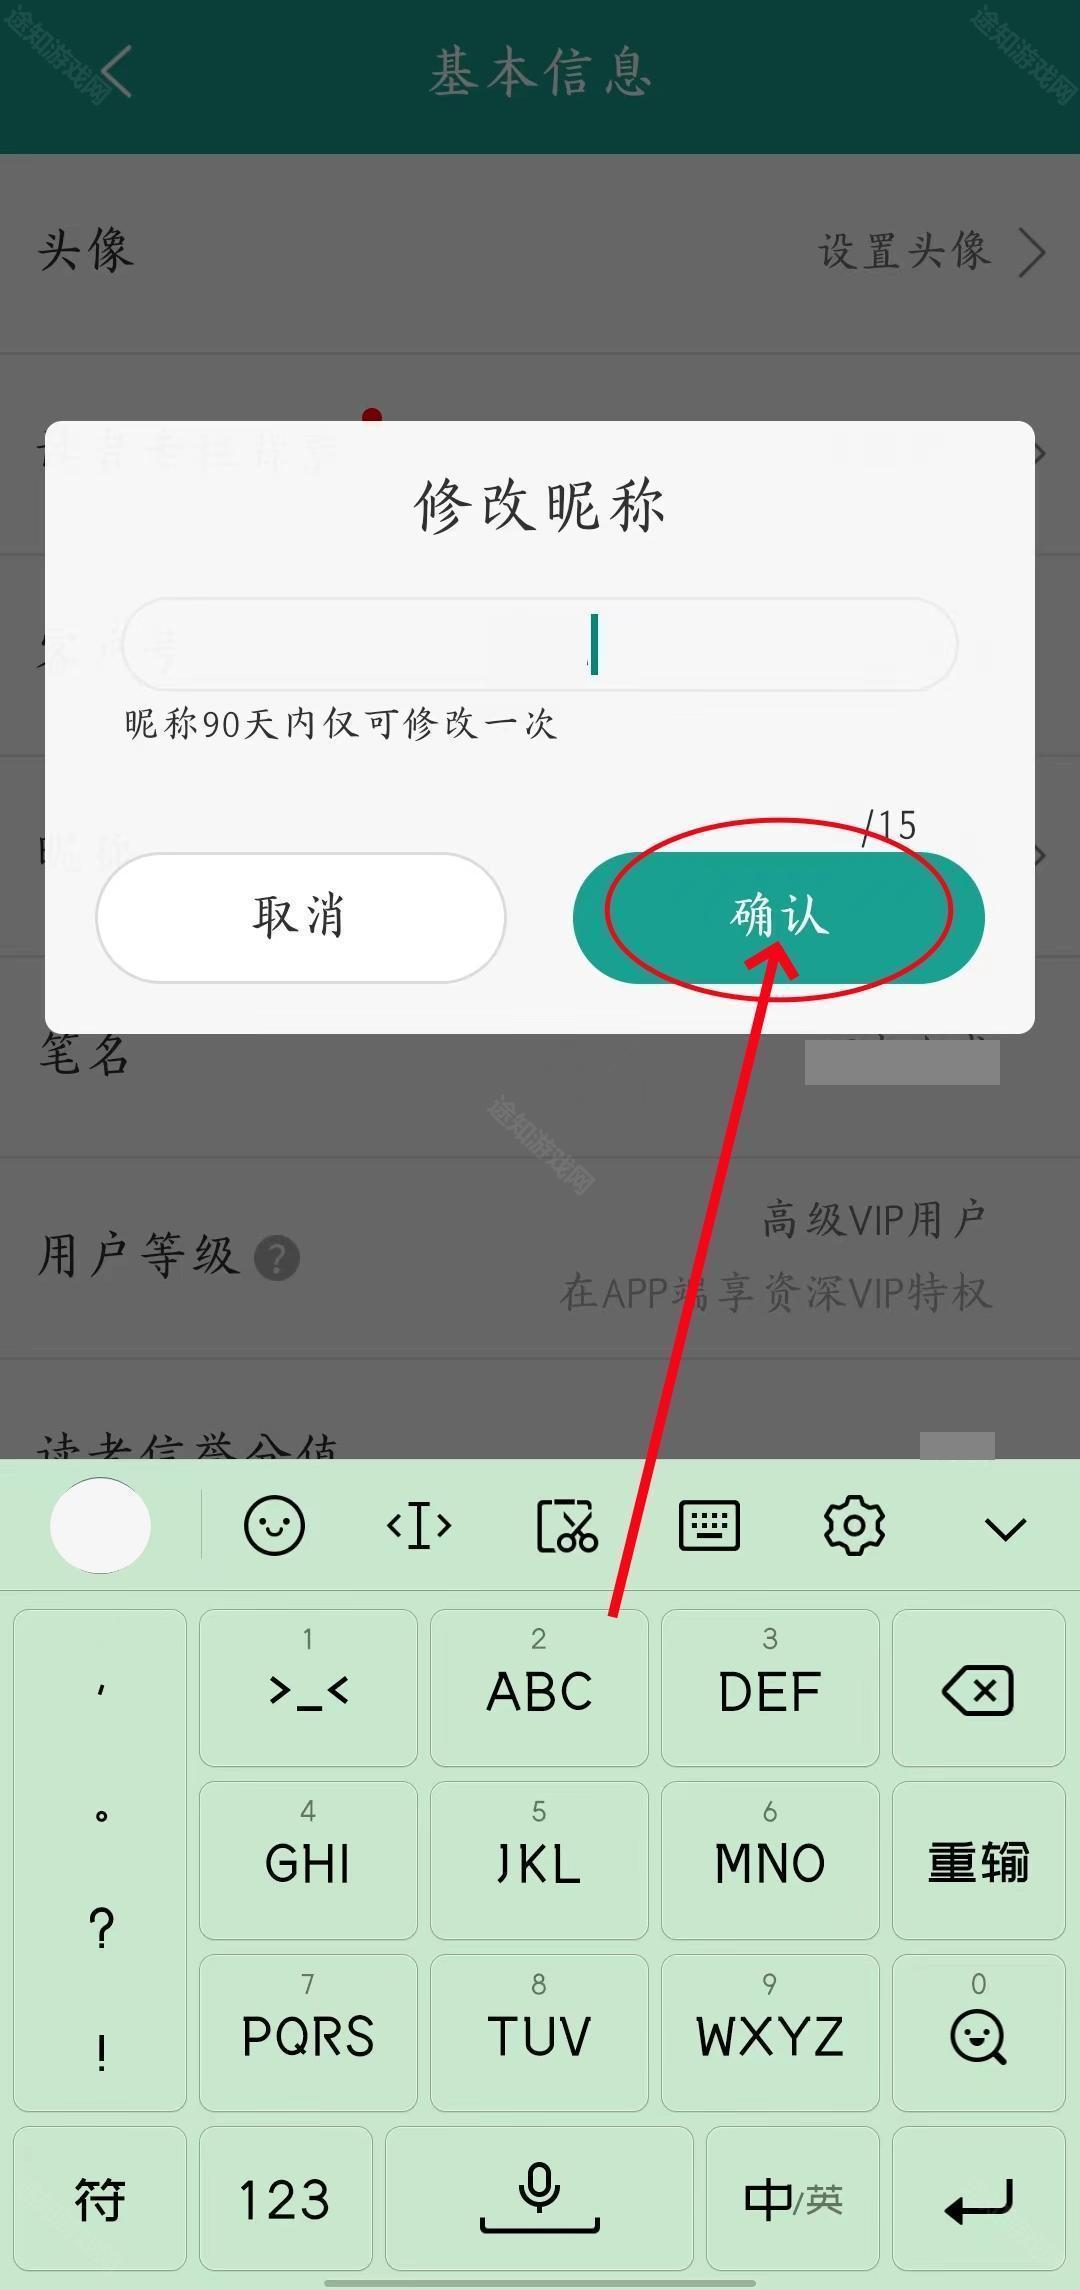 《晋江小说阅读》用户名称修改方法